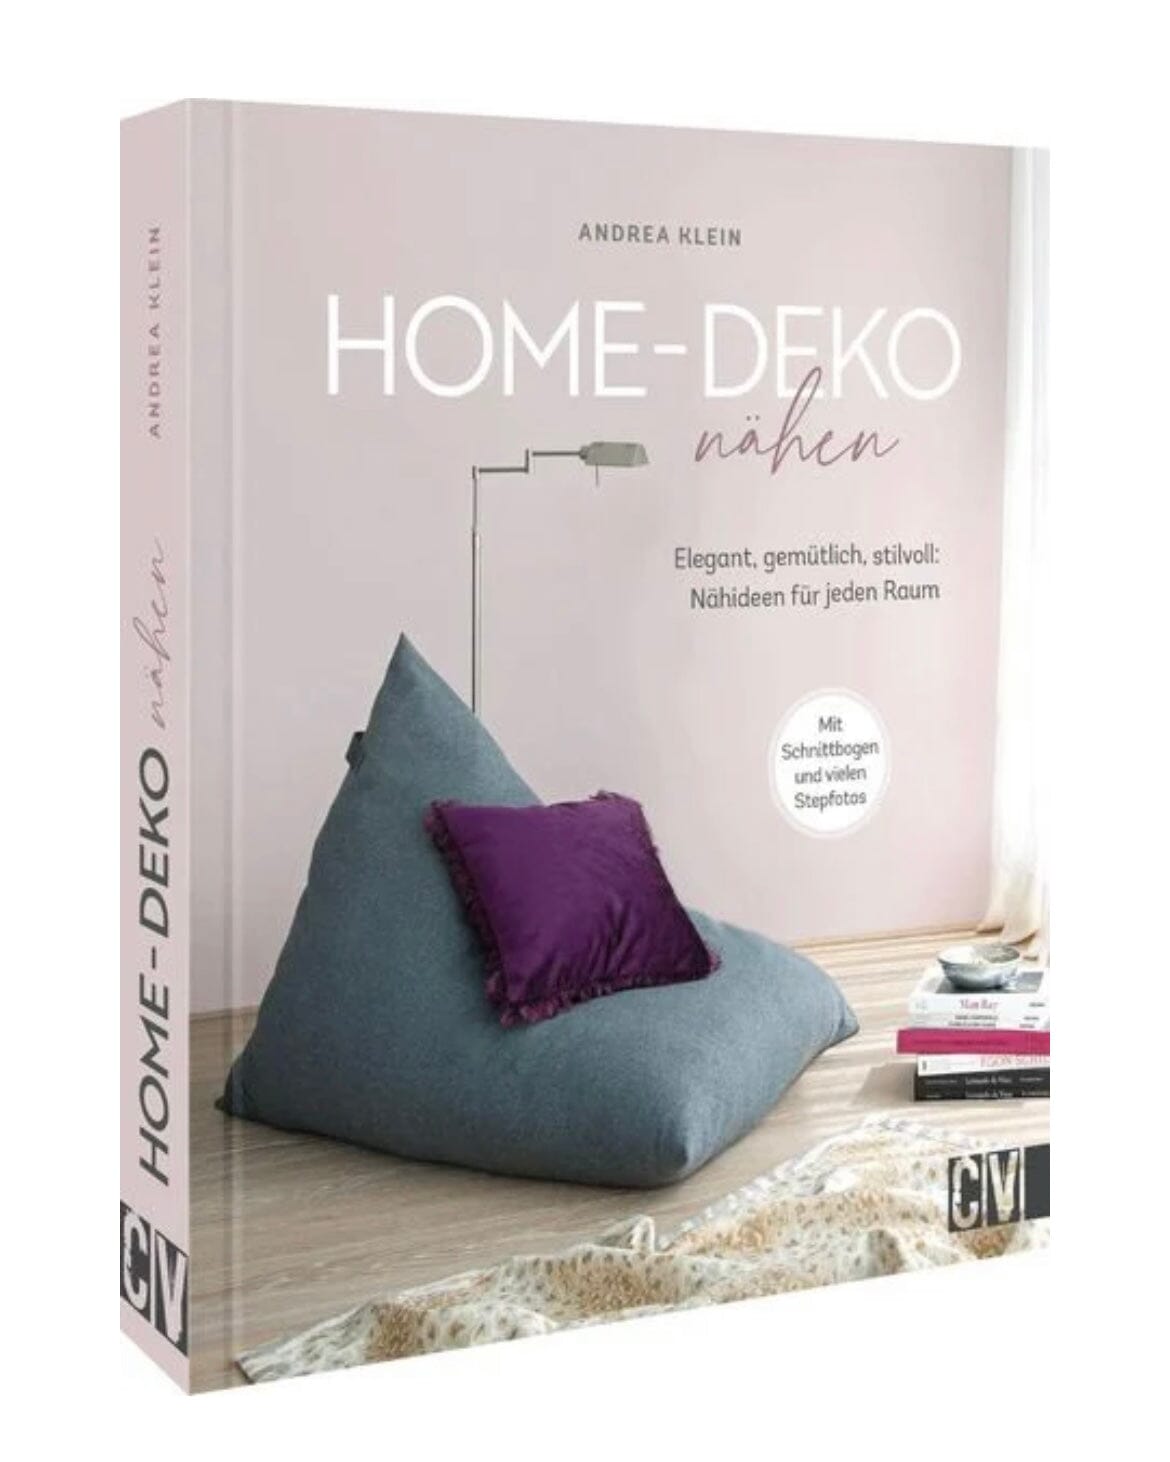 Home Deko Nähen - elegant, stilvoll, gemütlich - Nähideen für jeden Raum! Stück poshpinks